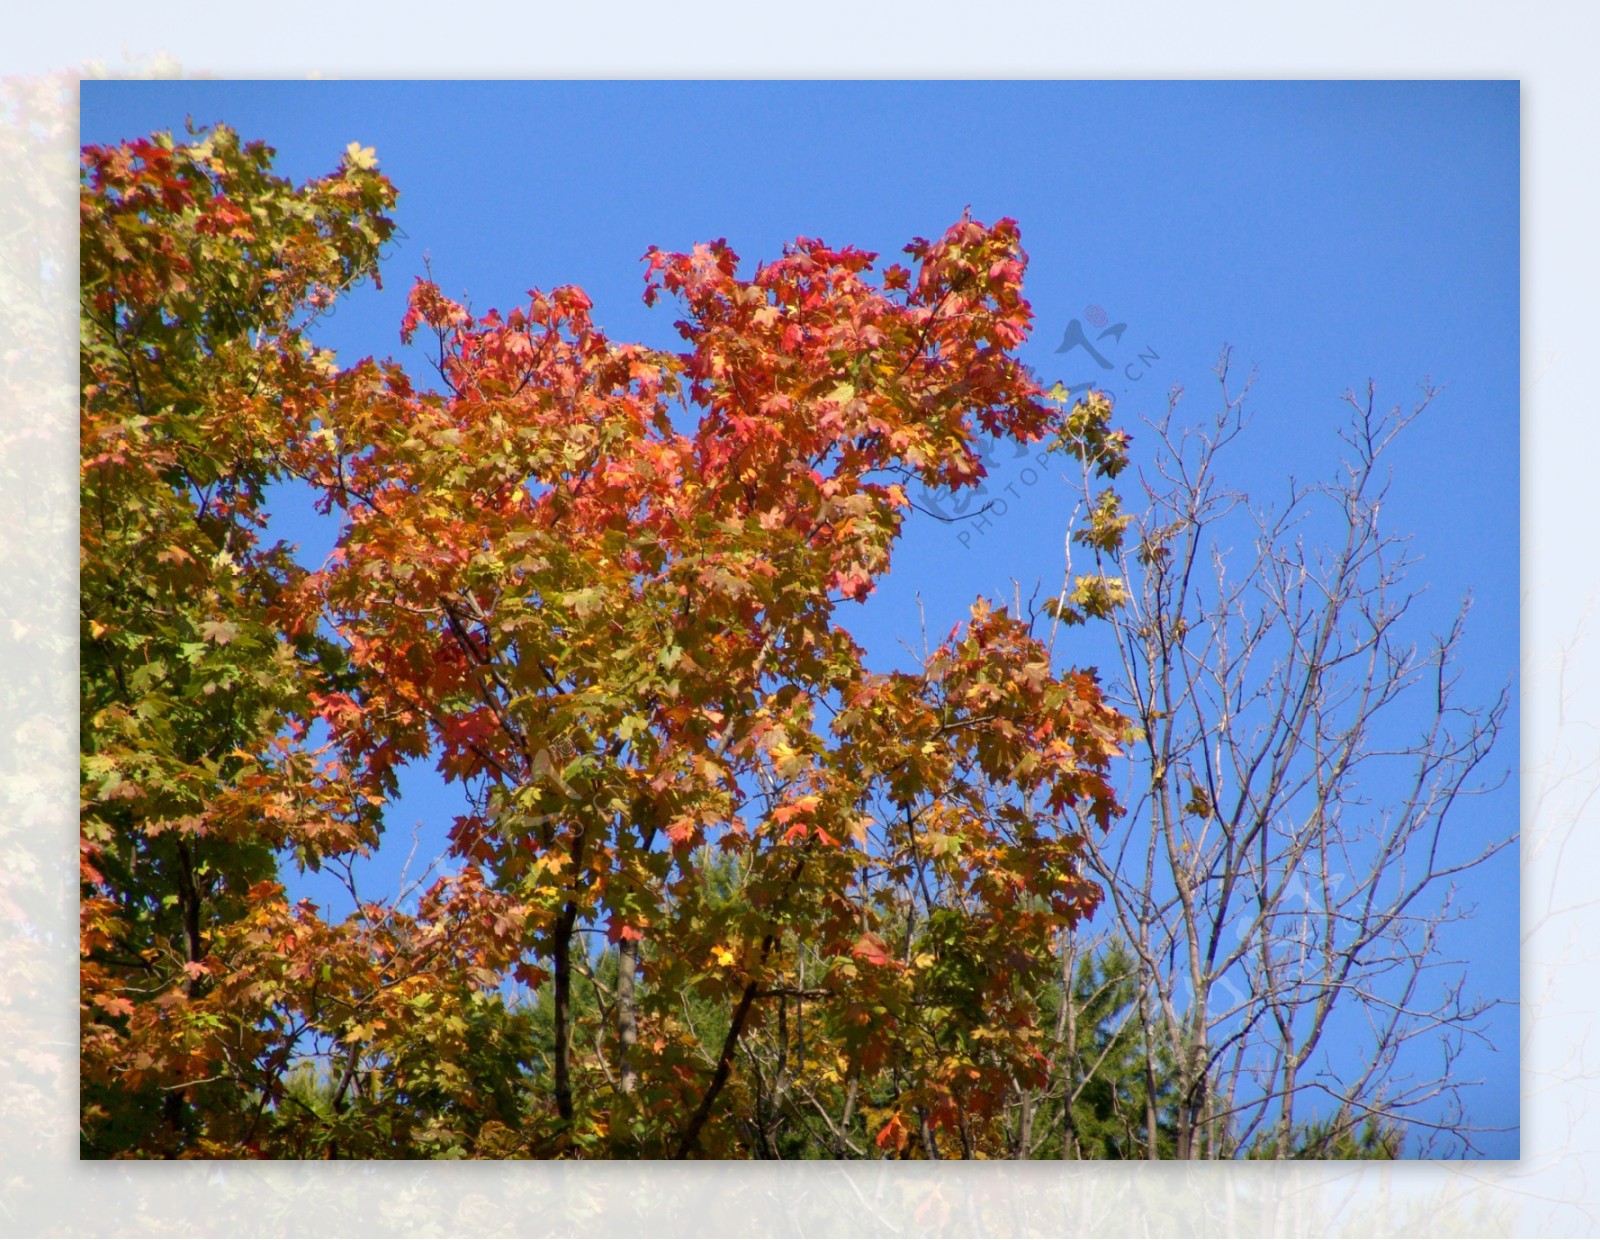 秋天枫树林风景图片